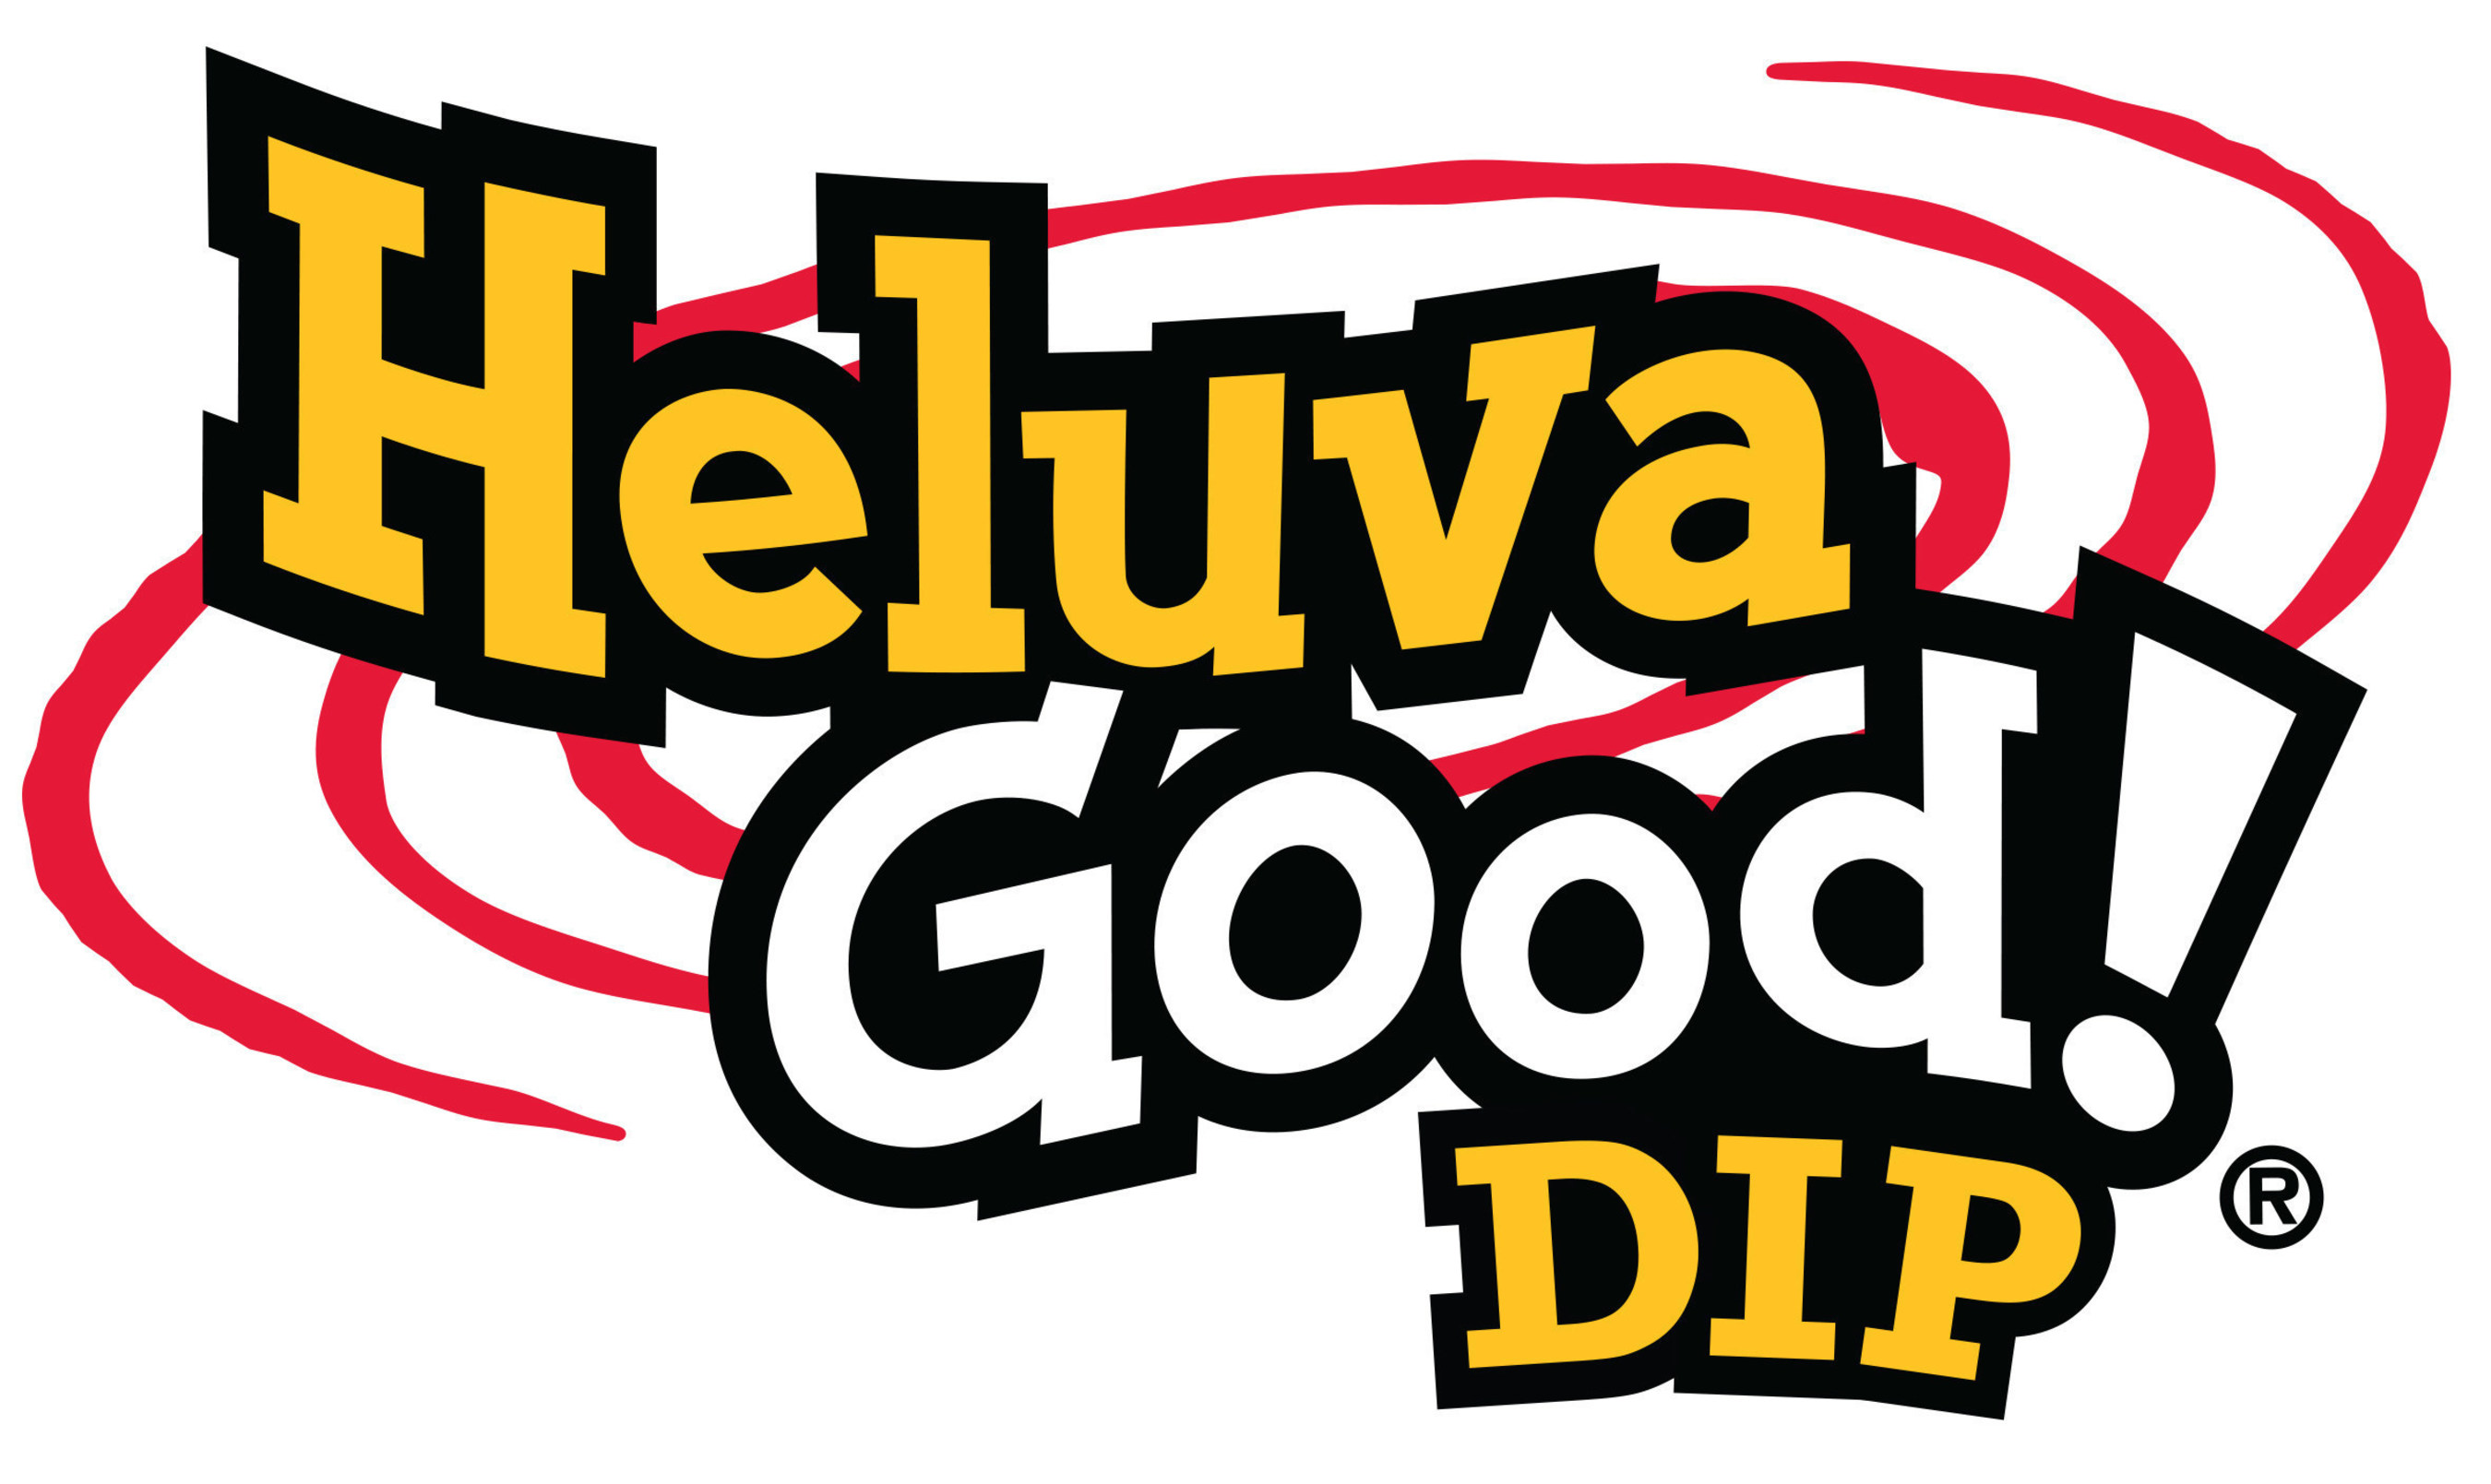 Heluva Good!(R) company logo.